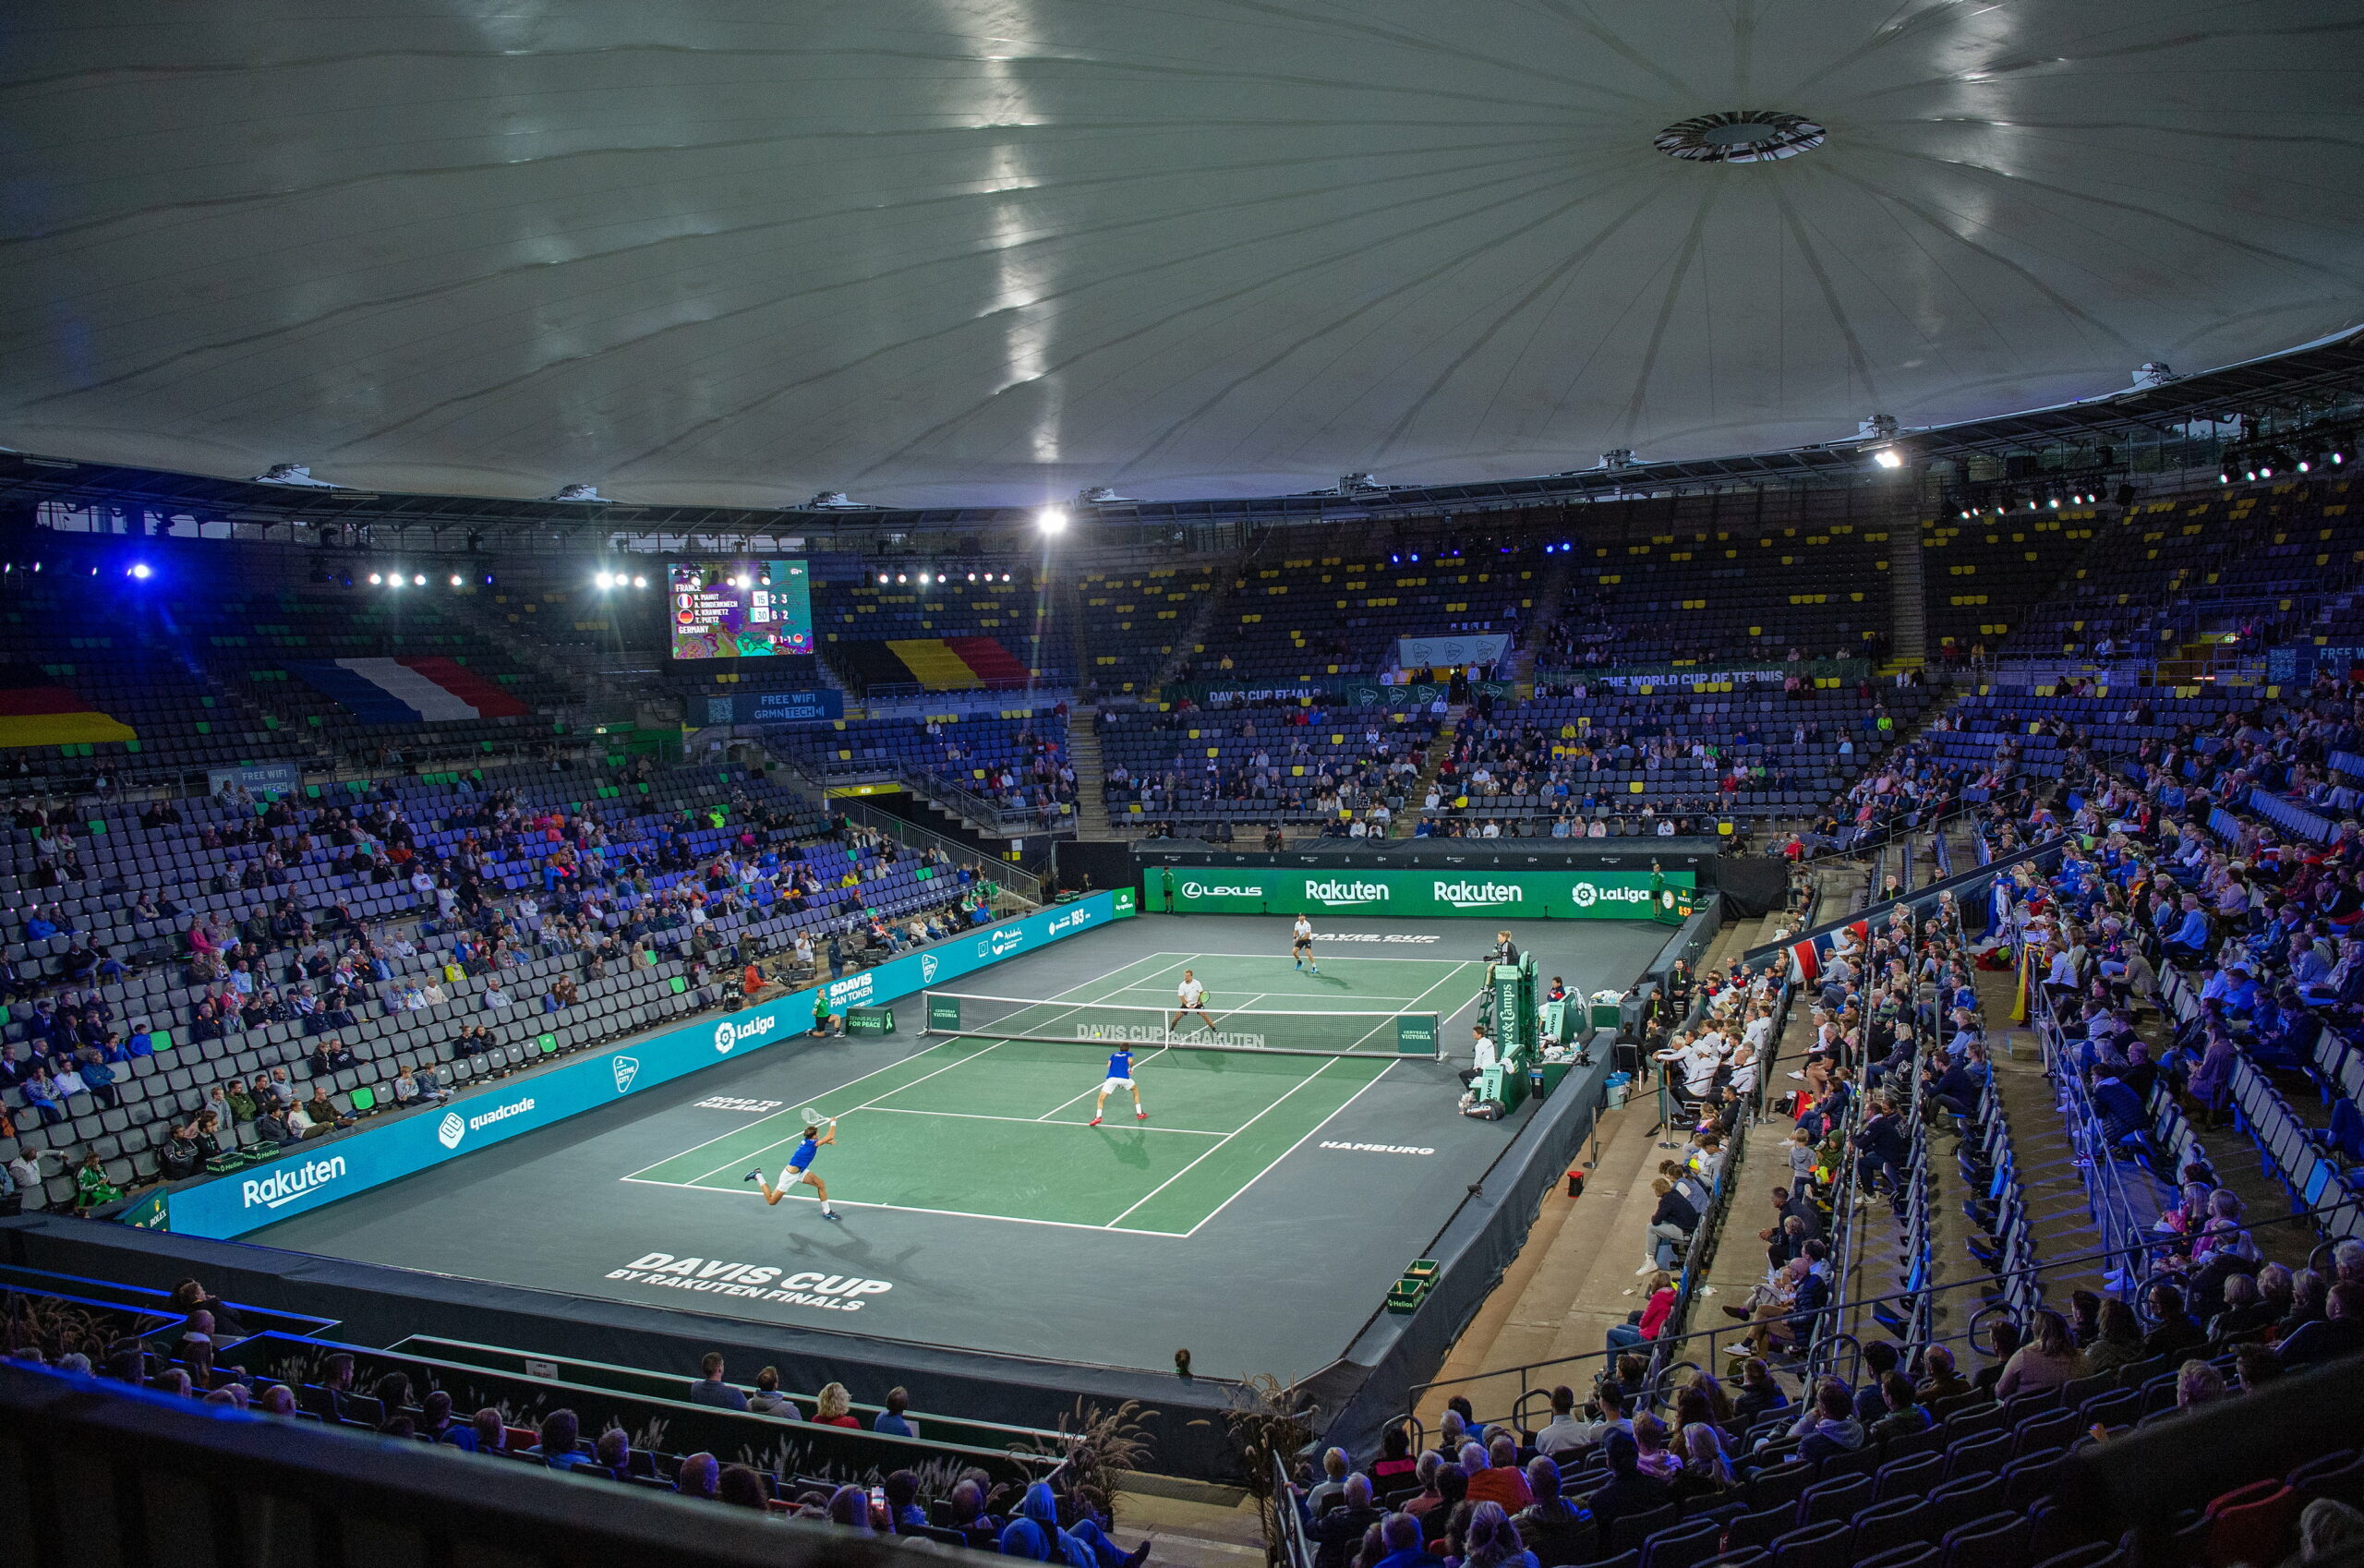 Center Court am Rothenbaum in Hamburg beim Davis Cup